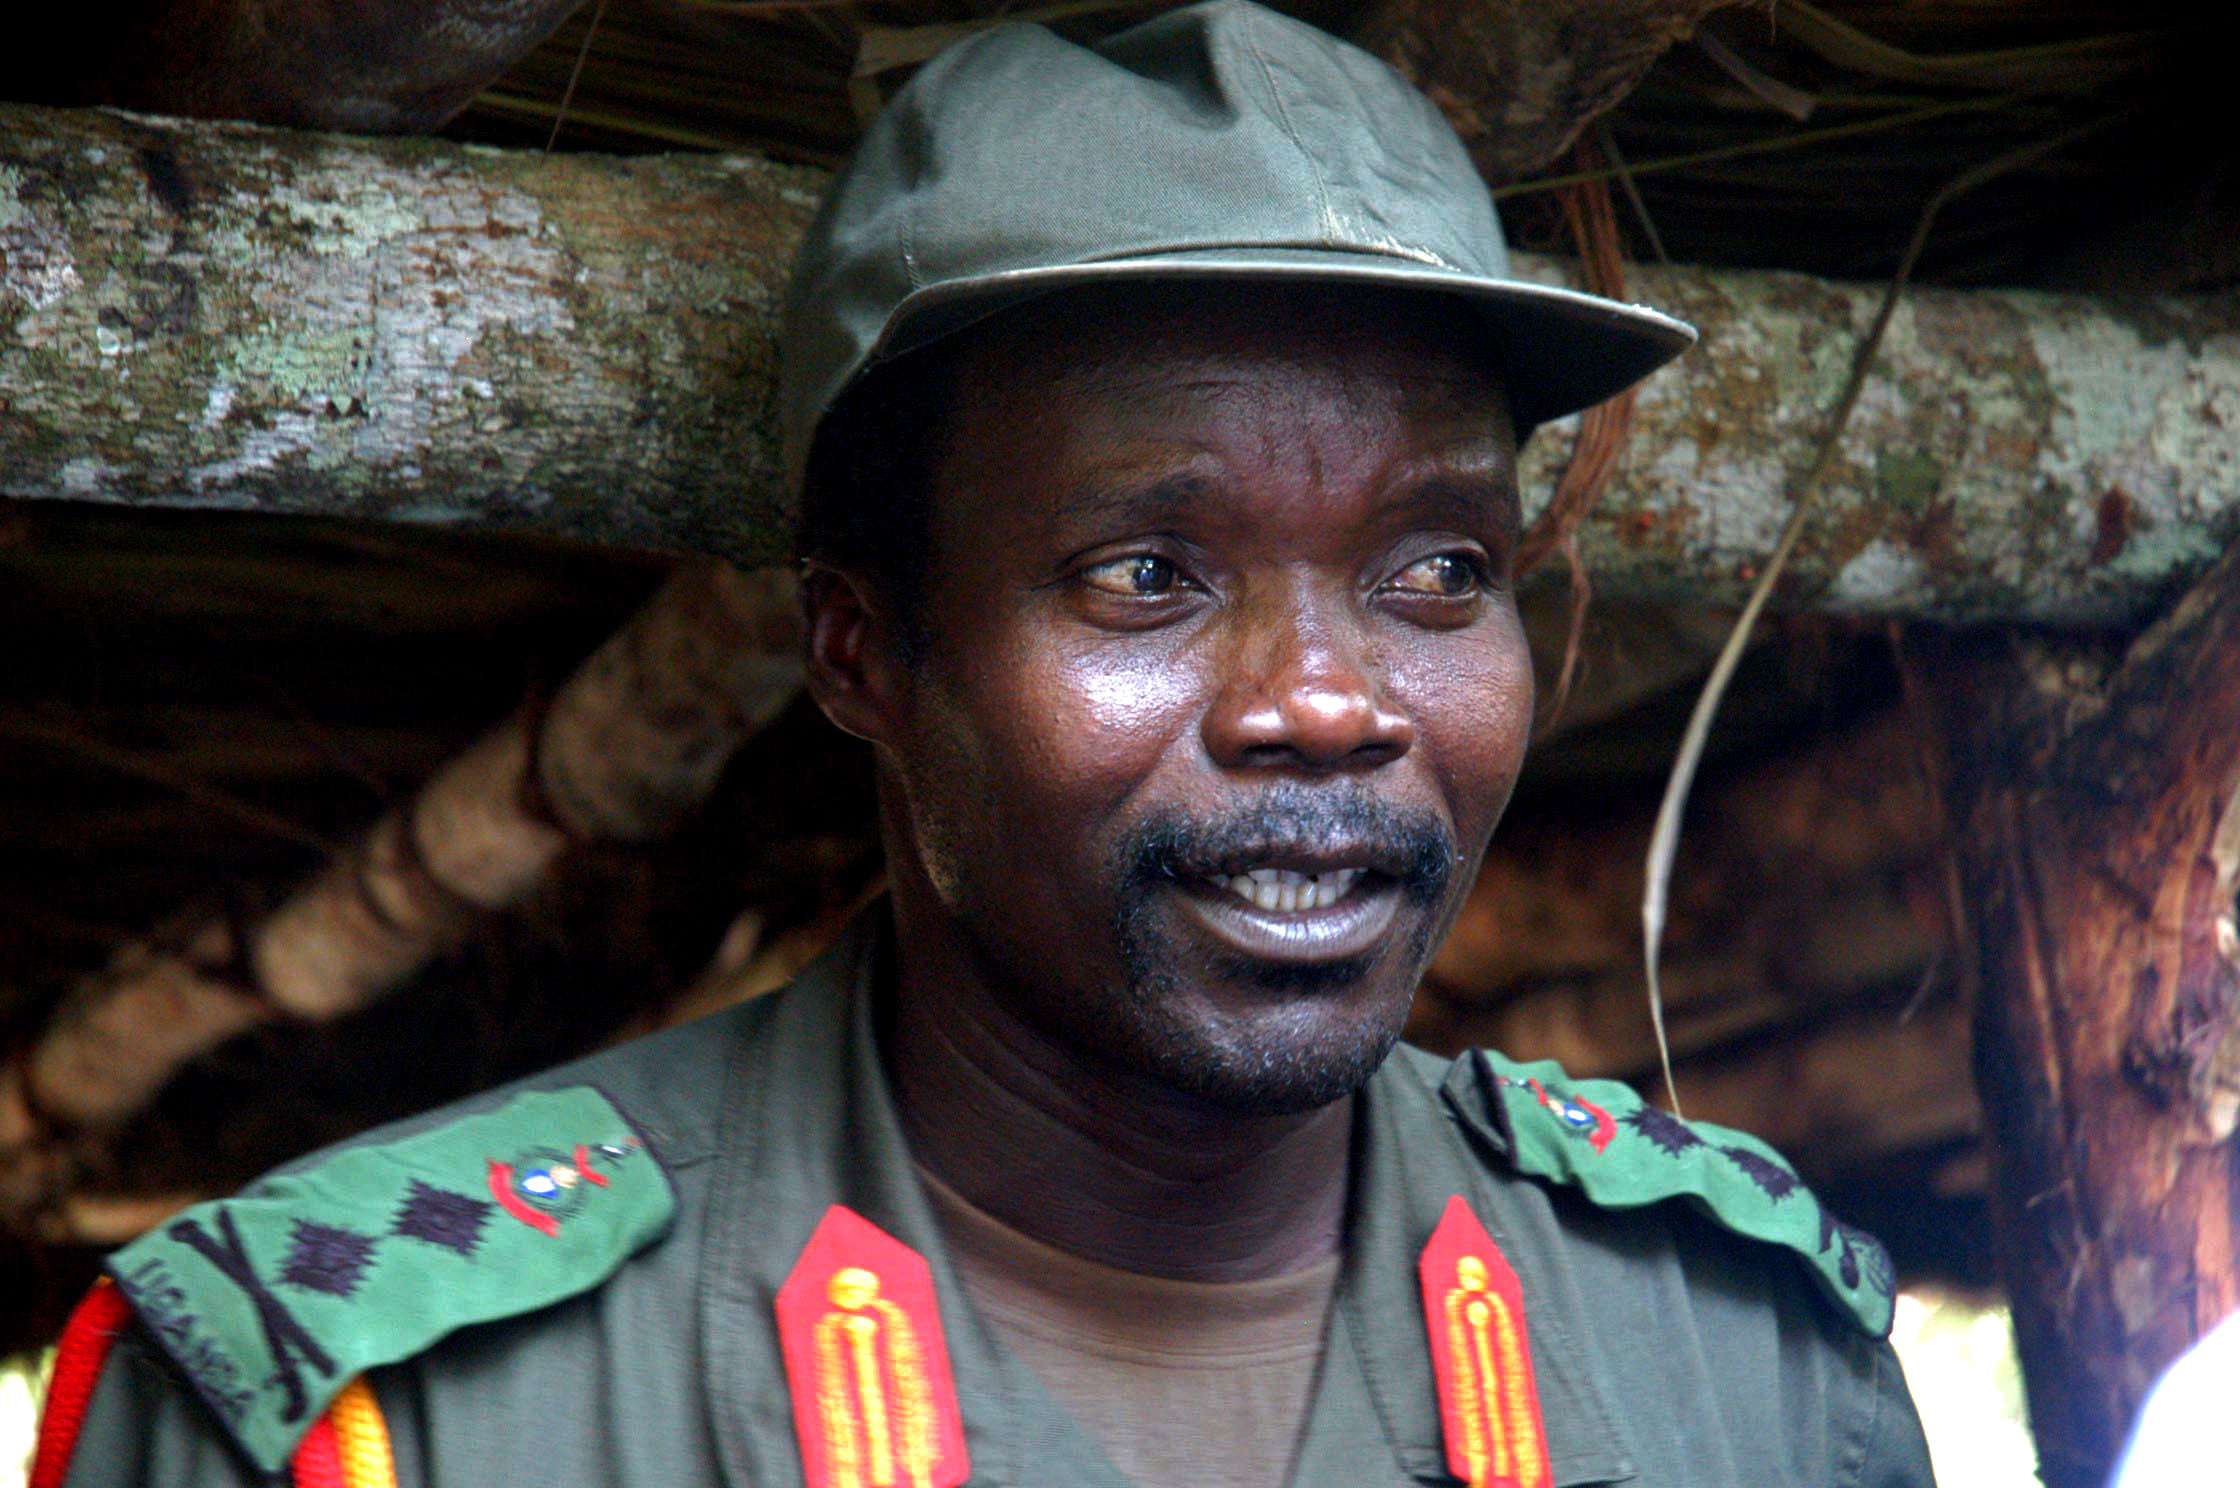 . . . Joseph Kony.